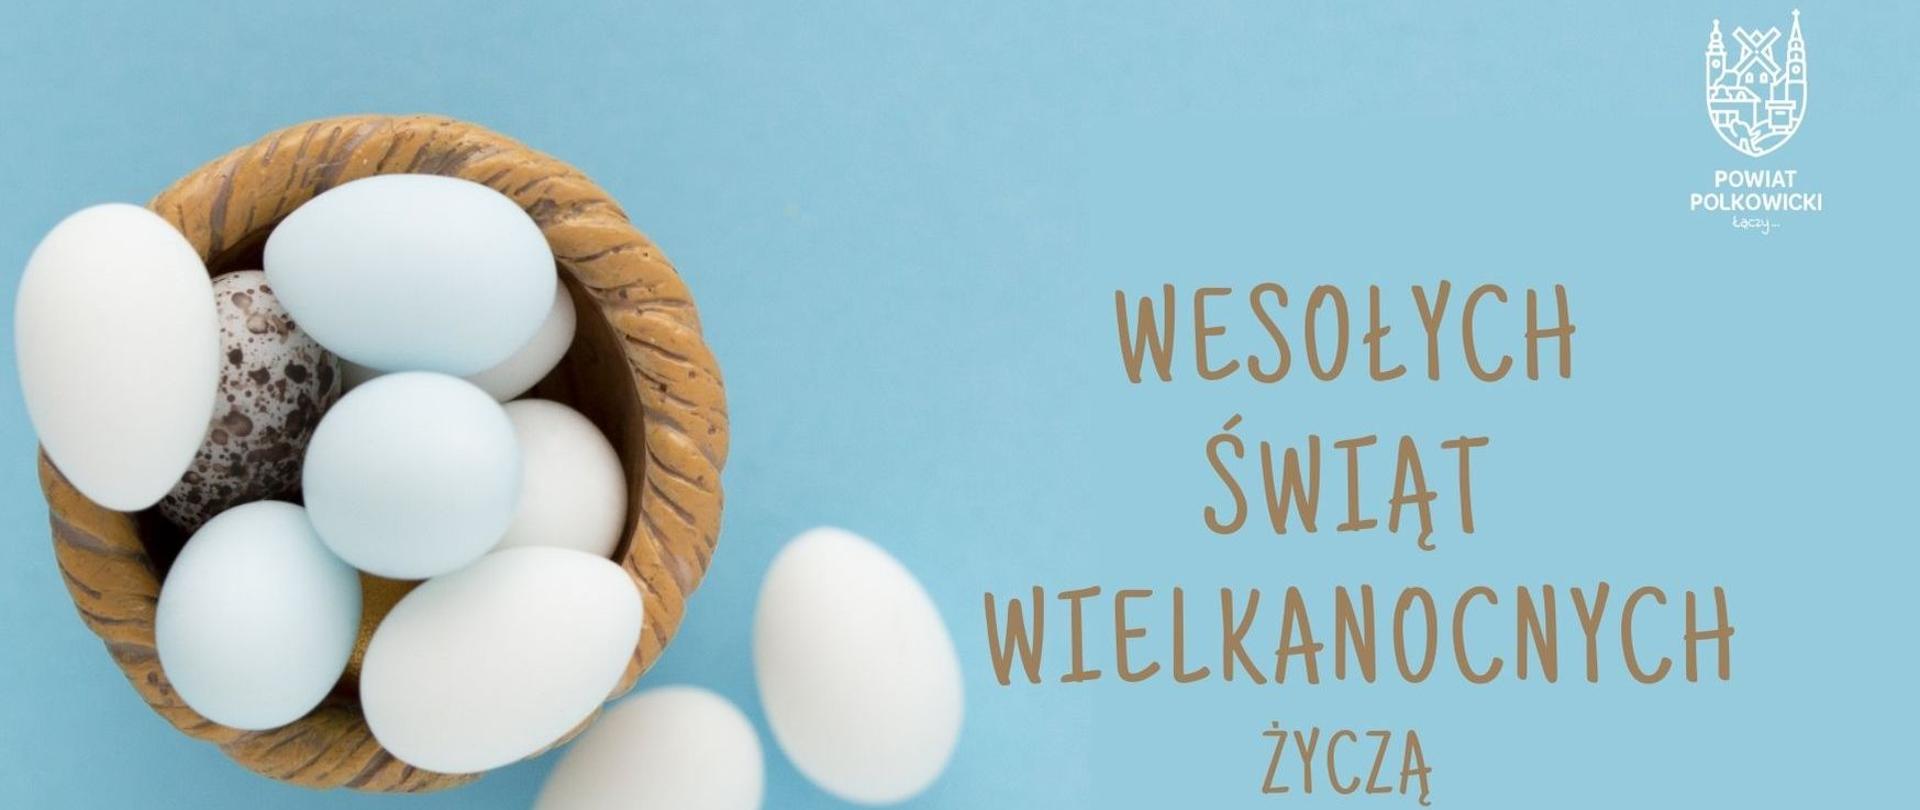 Białe jajka w koszyczku z życzeniami Wesołych Świąt Wielkanocnych życzą Henryk Czekajło Przewodniczący Rady Powiatu, Kamil Ciupak Starosta Polkowicki. W prawym górnym rogu znajduje się logo powiatu.